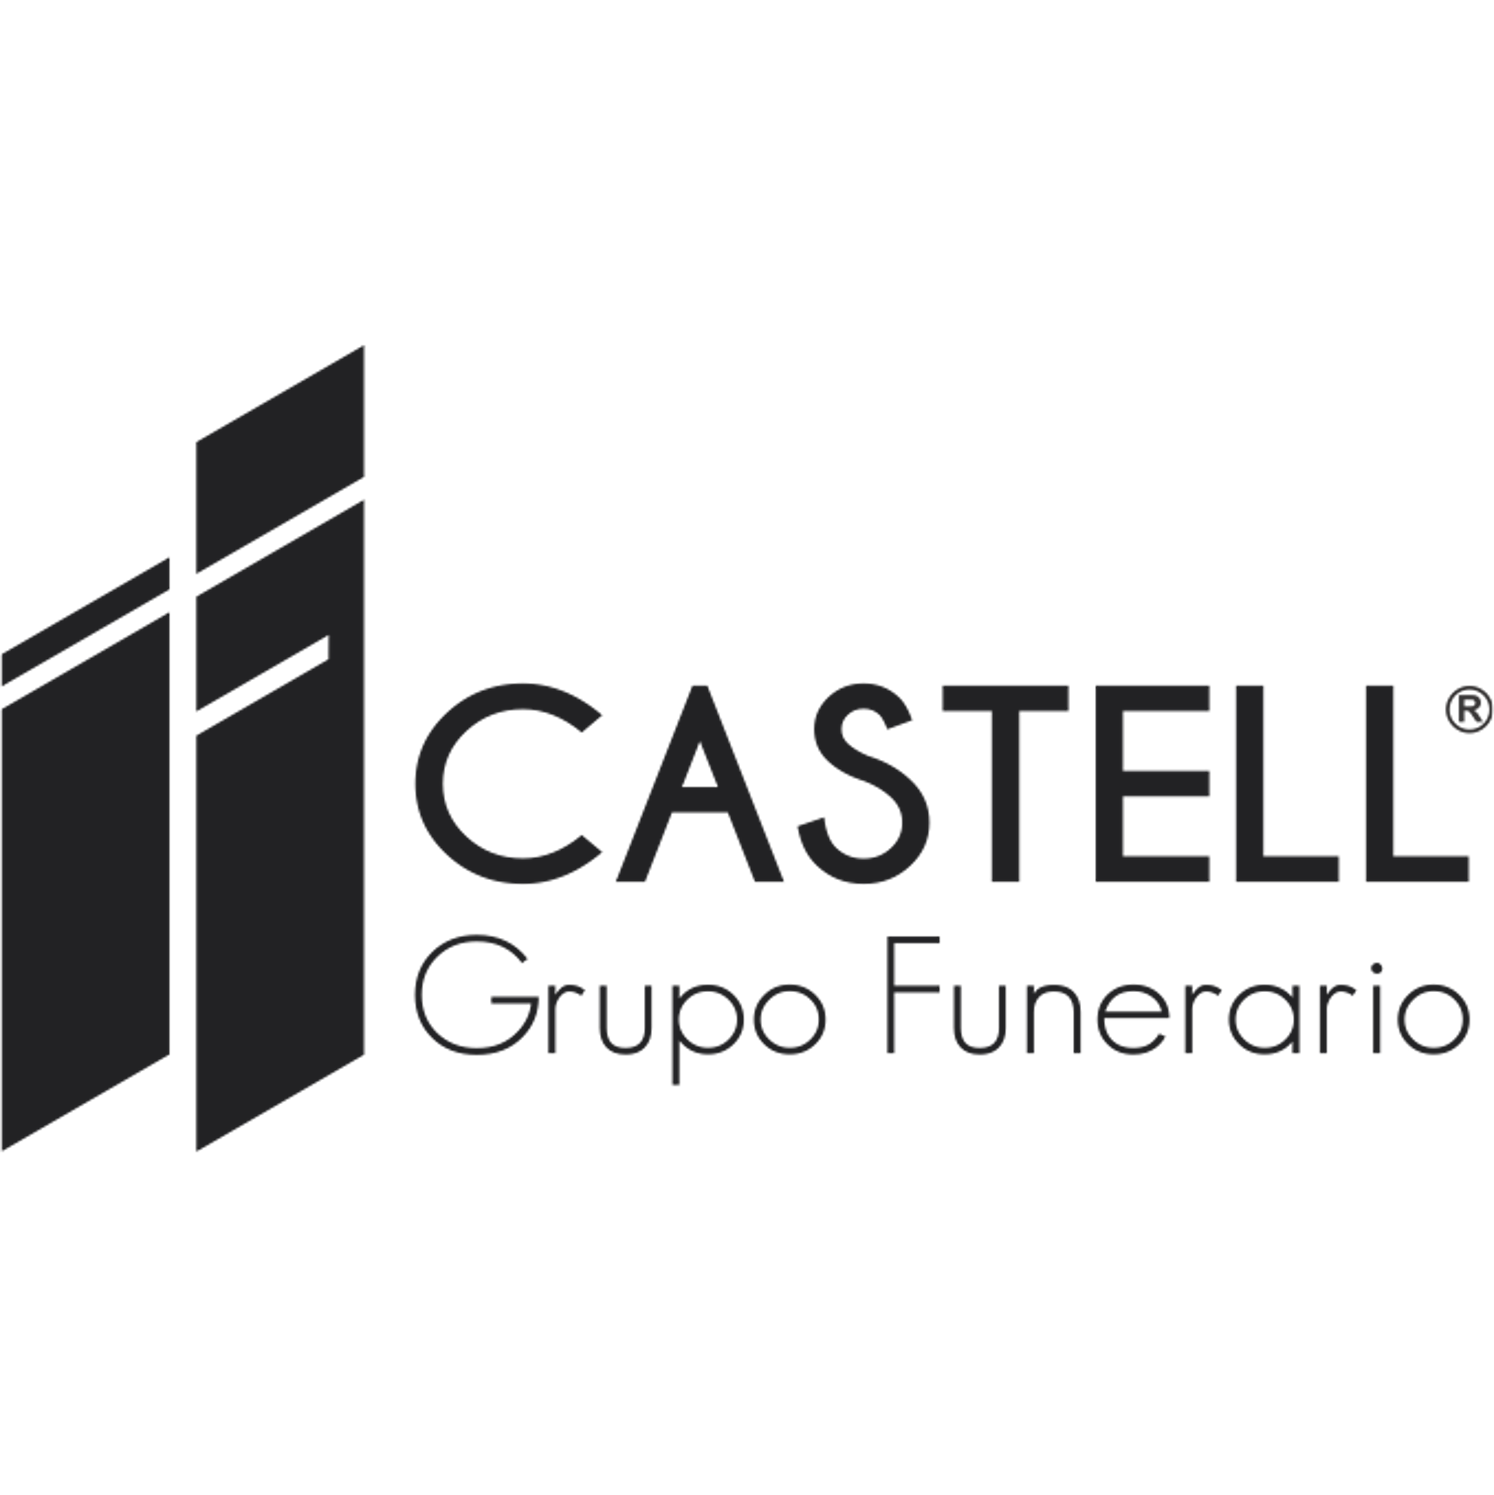 Grupo Funerario Castell